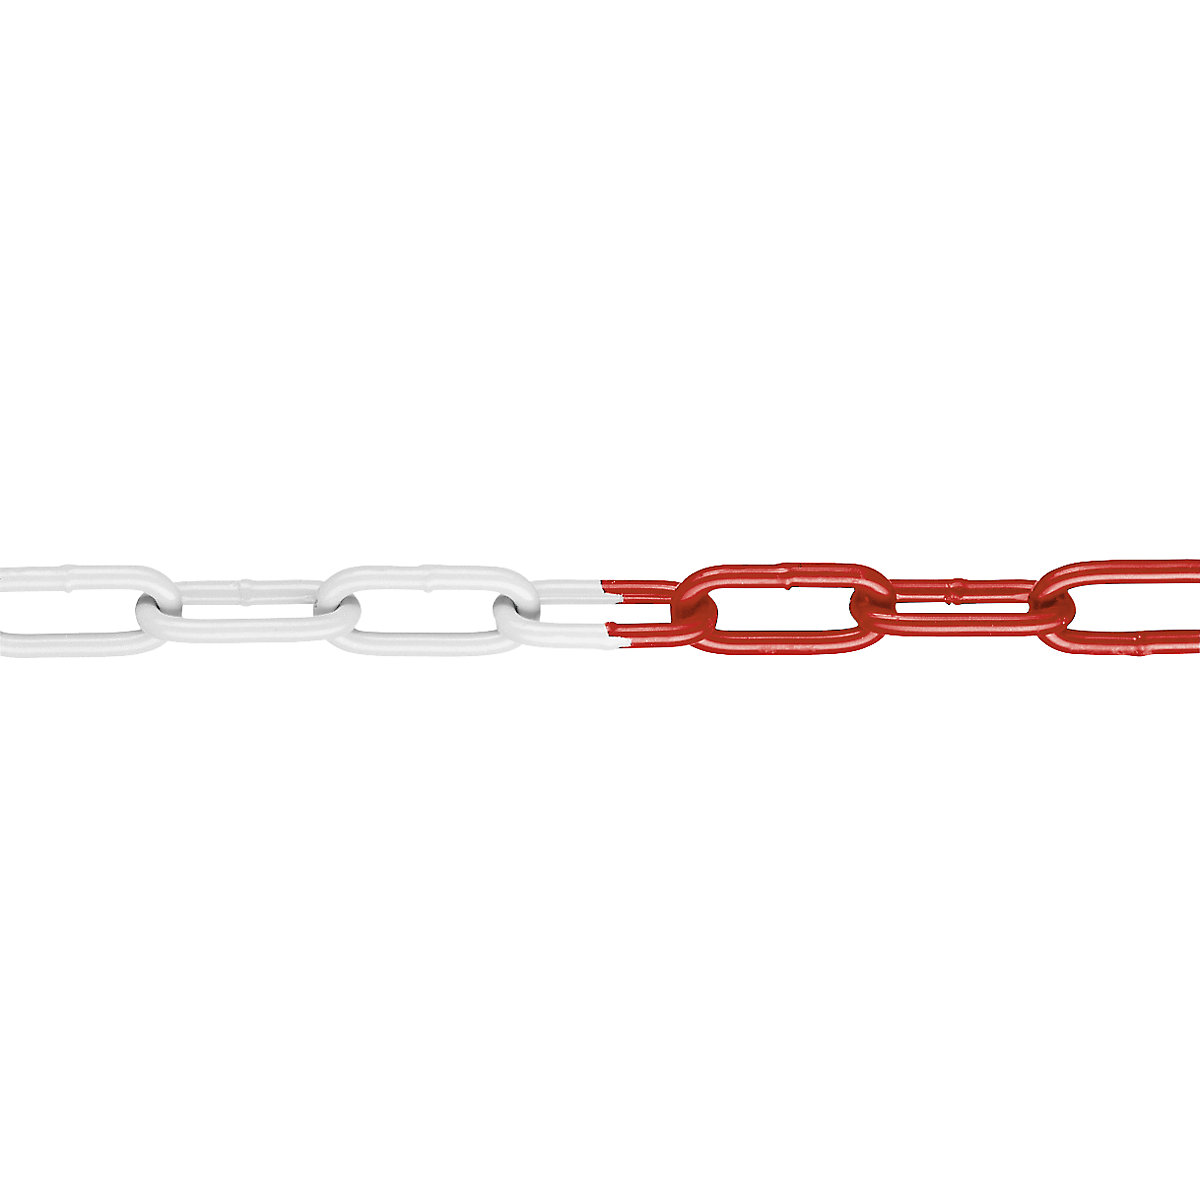 Afzetketting in signaalkleur, van staal met kunststof coating, 15 m, rood/wit-3